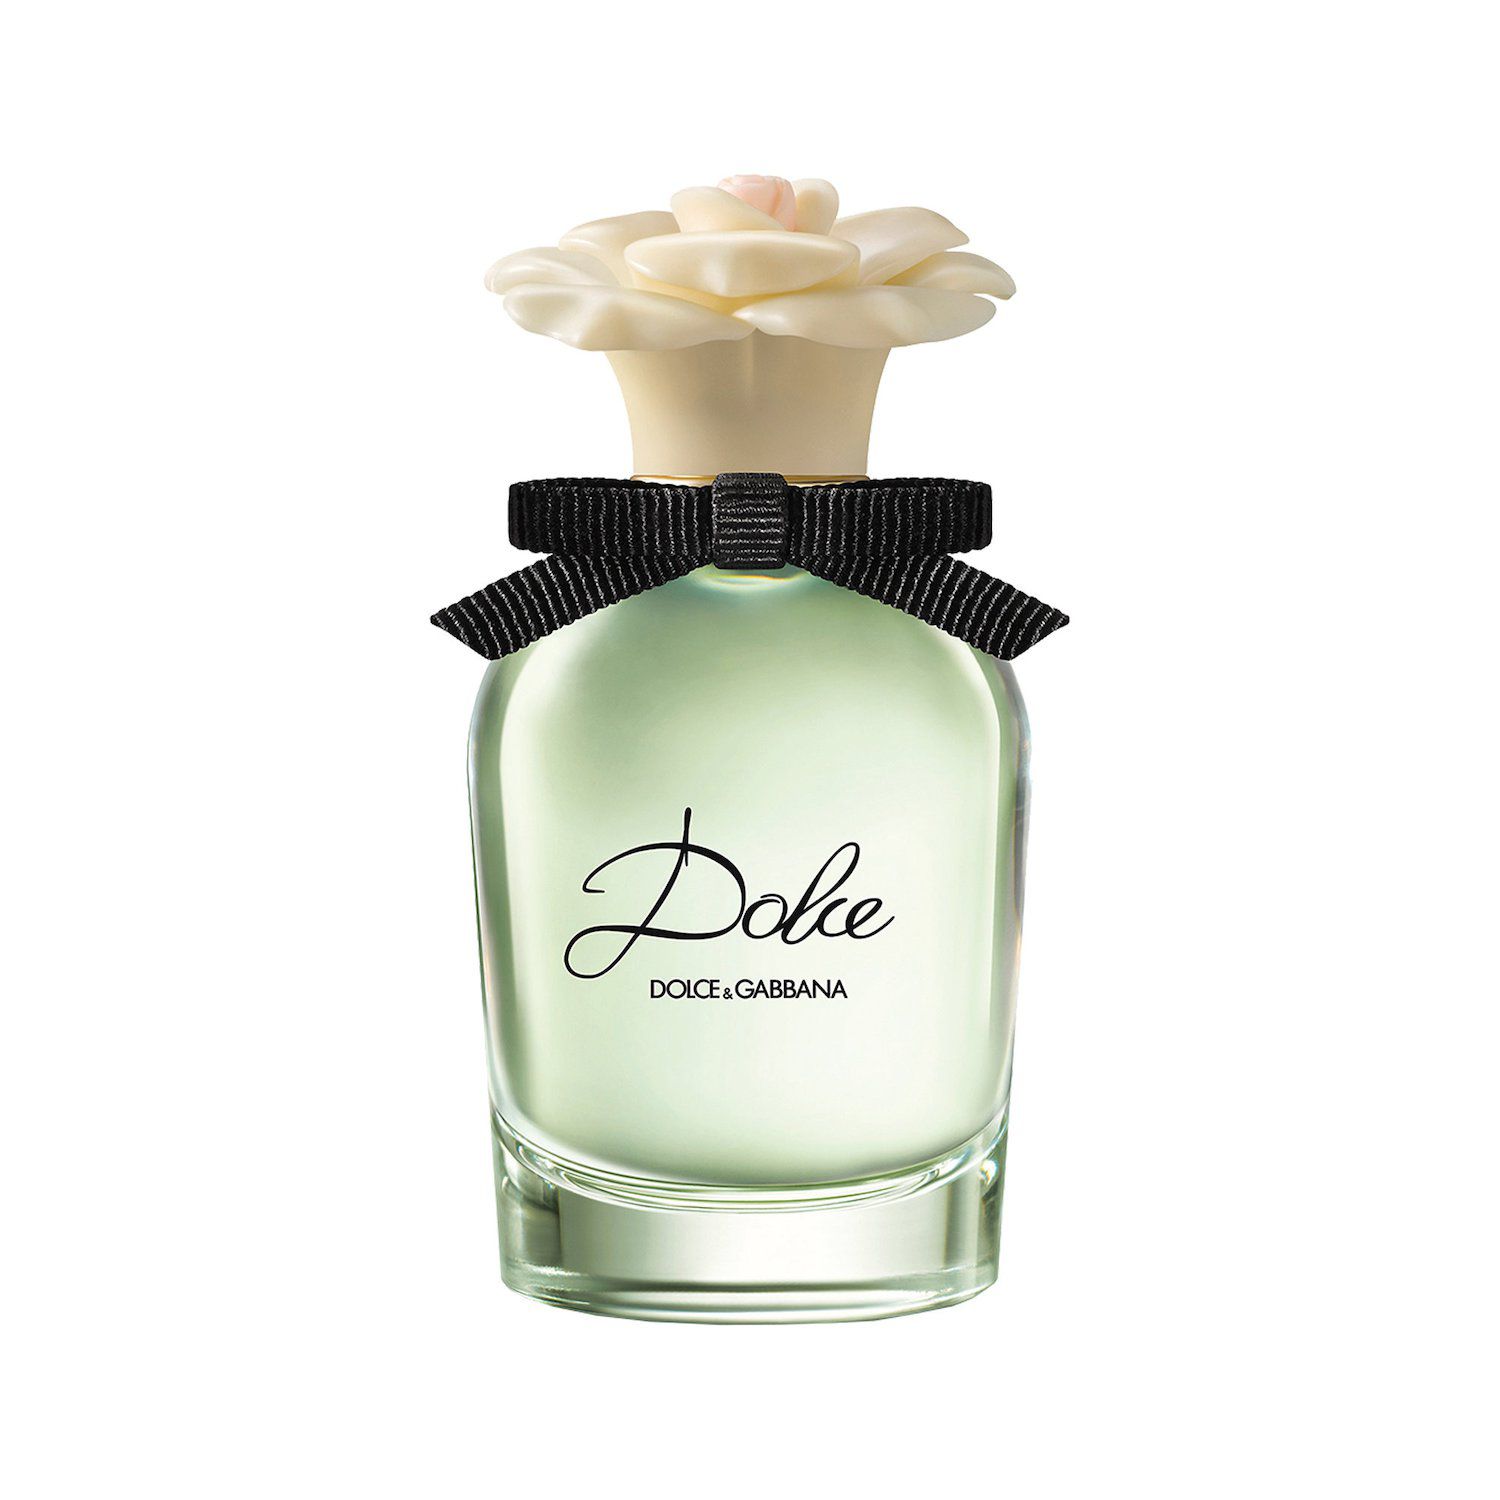 Image for DOLCE&GABBANA Dolce Eau de Parfum at Kohl's.